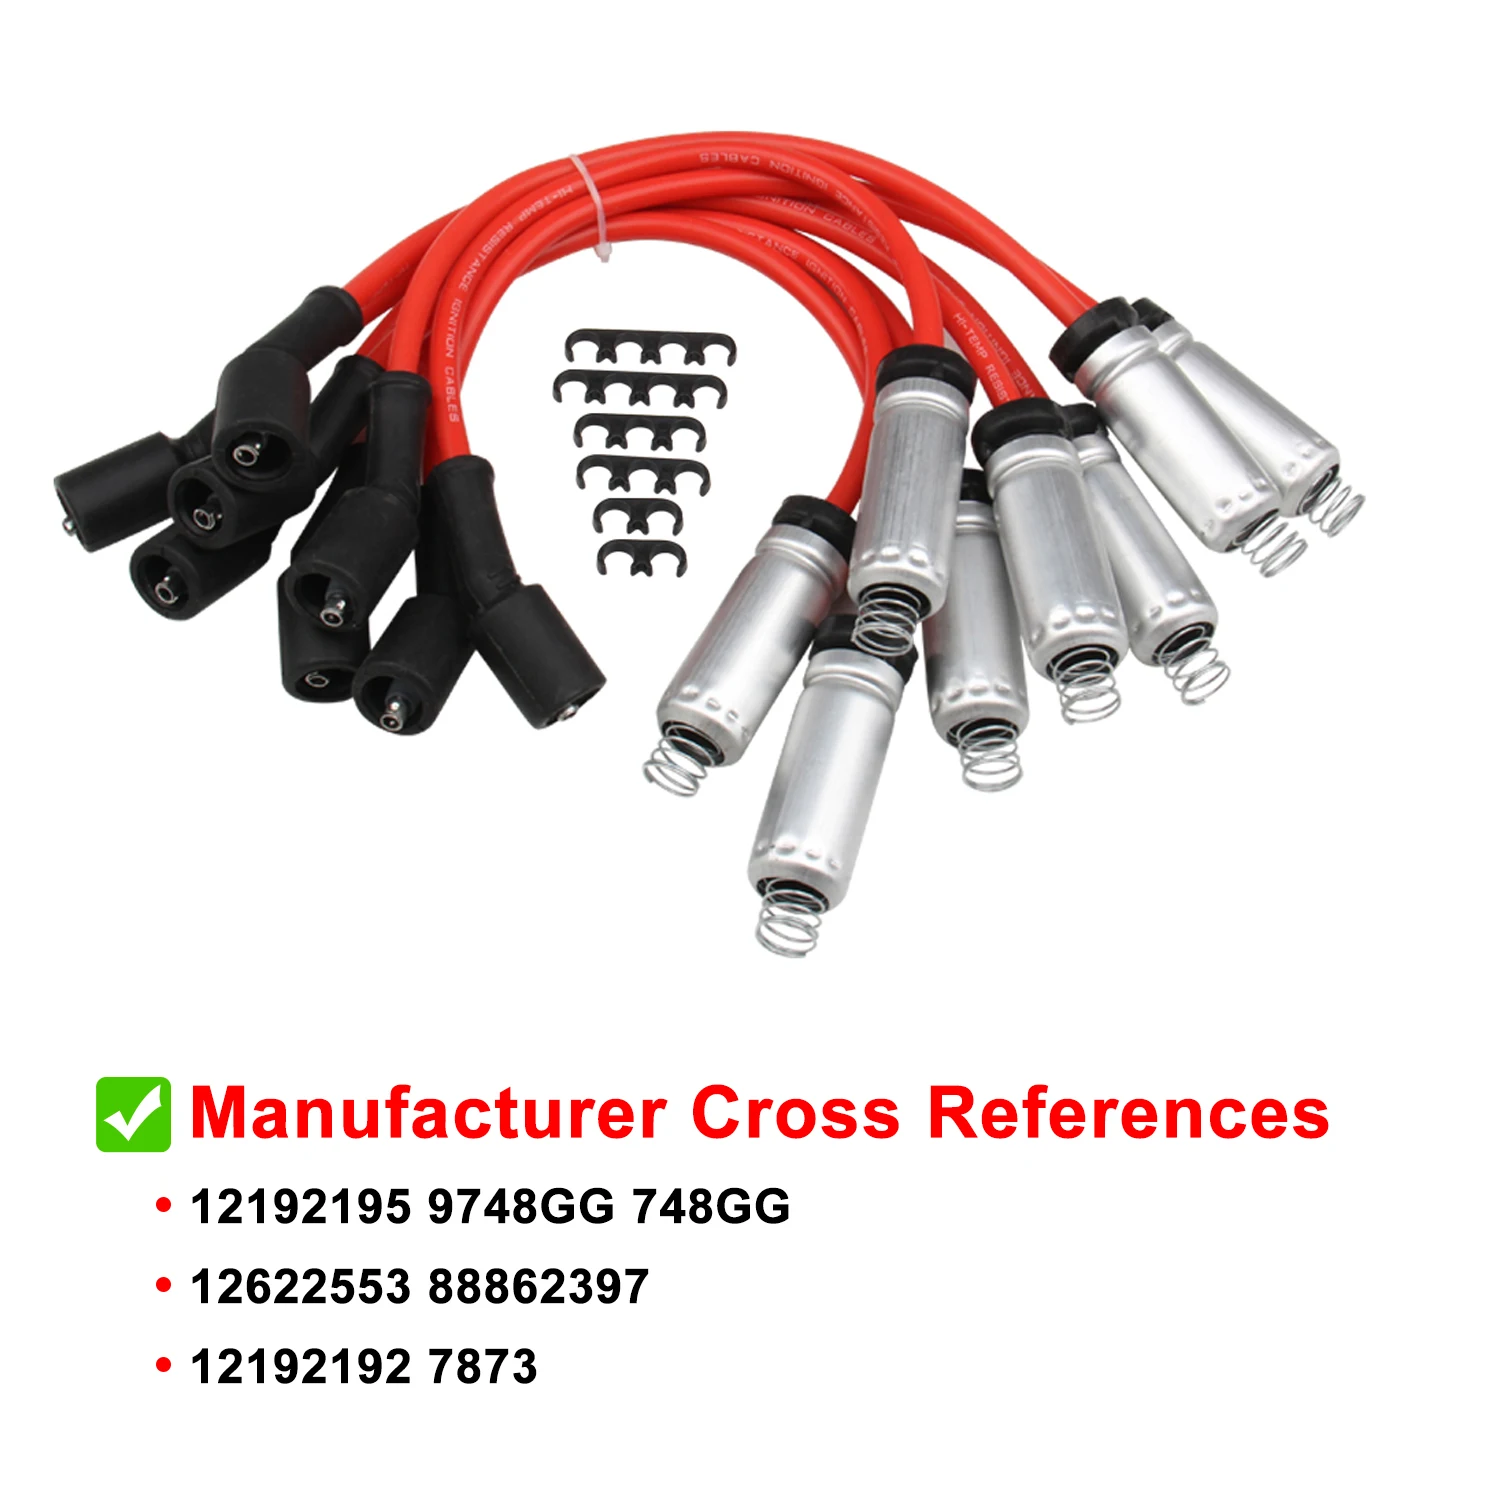 4048 Spark Plug Wire Set For GMC Chevy G10 G20 G30 C1500 C2500 C3500 5.0L 5.7L